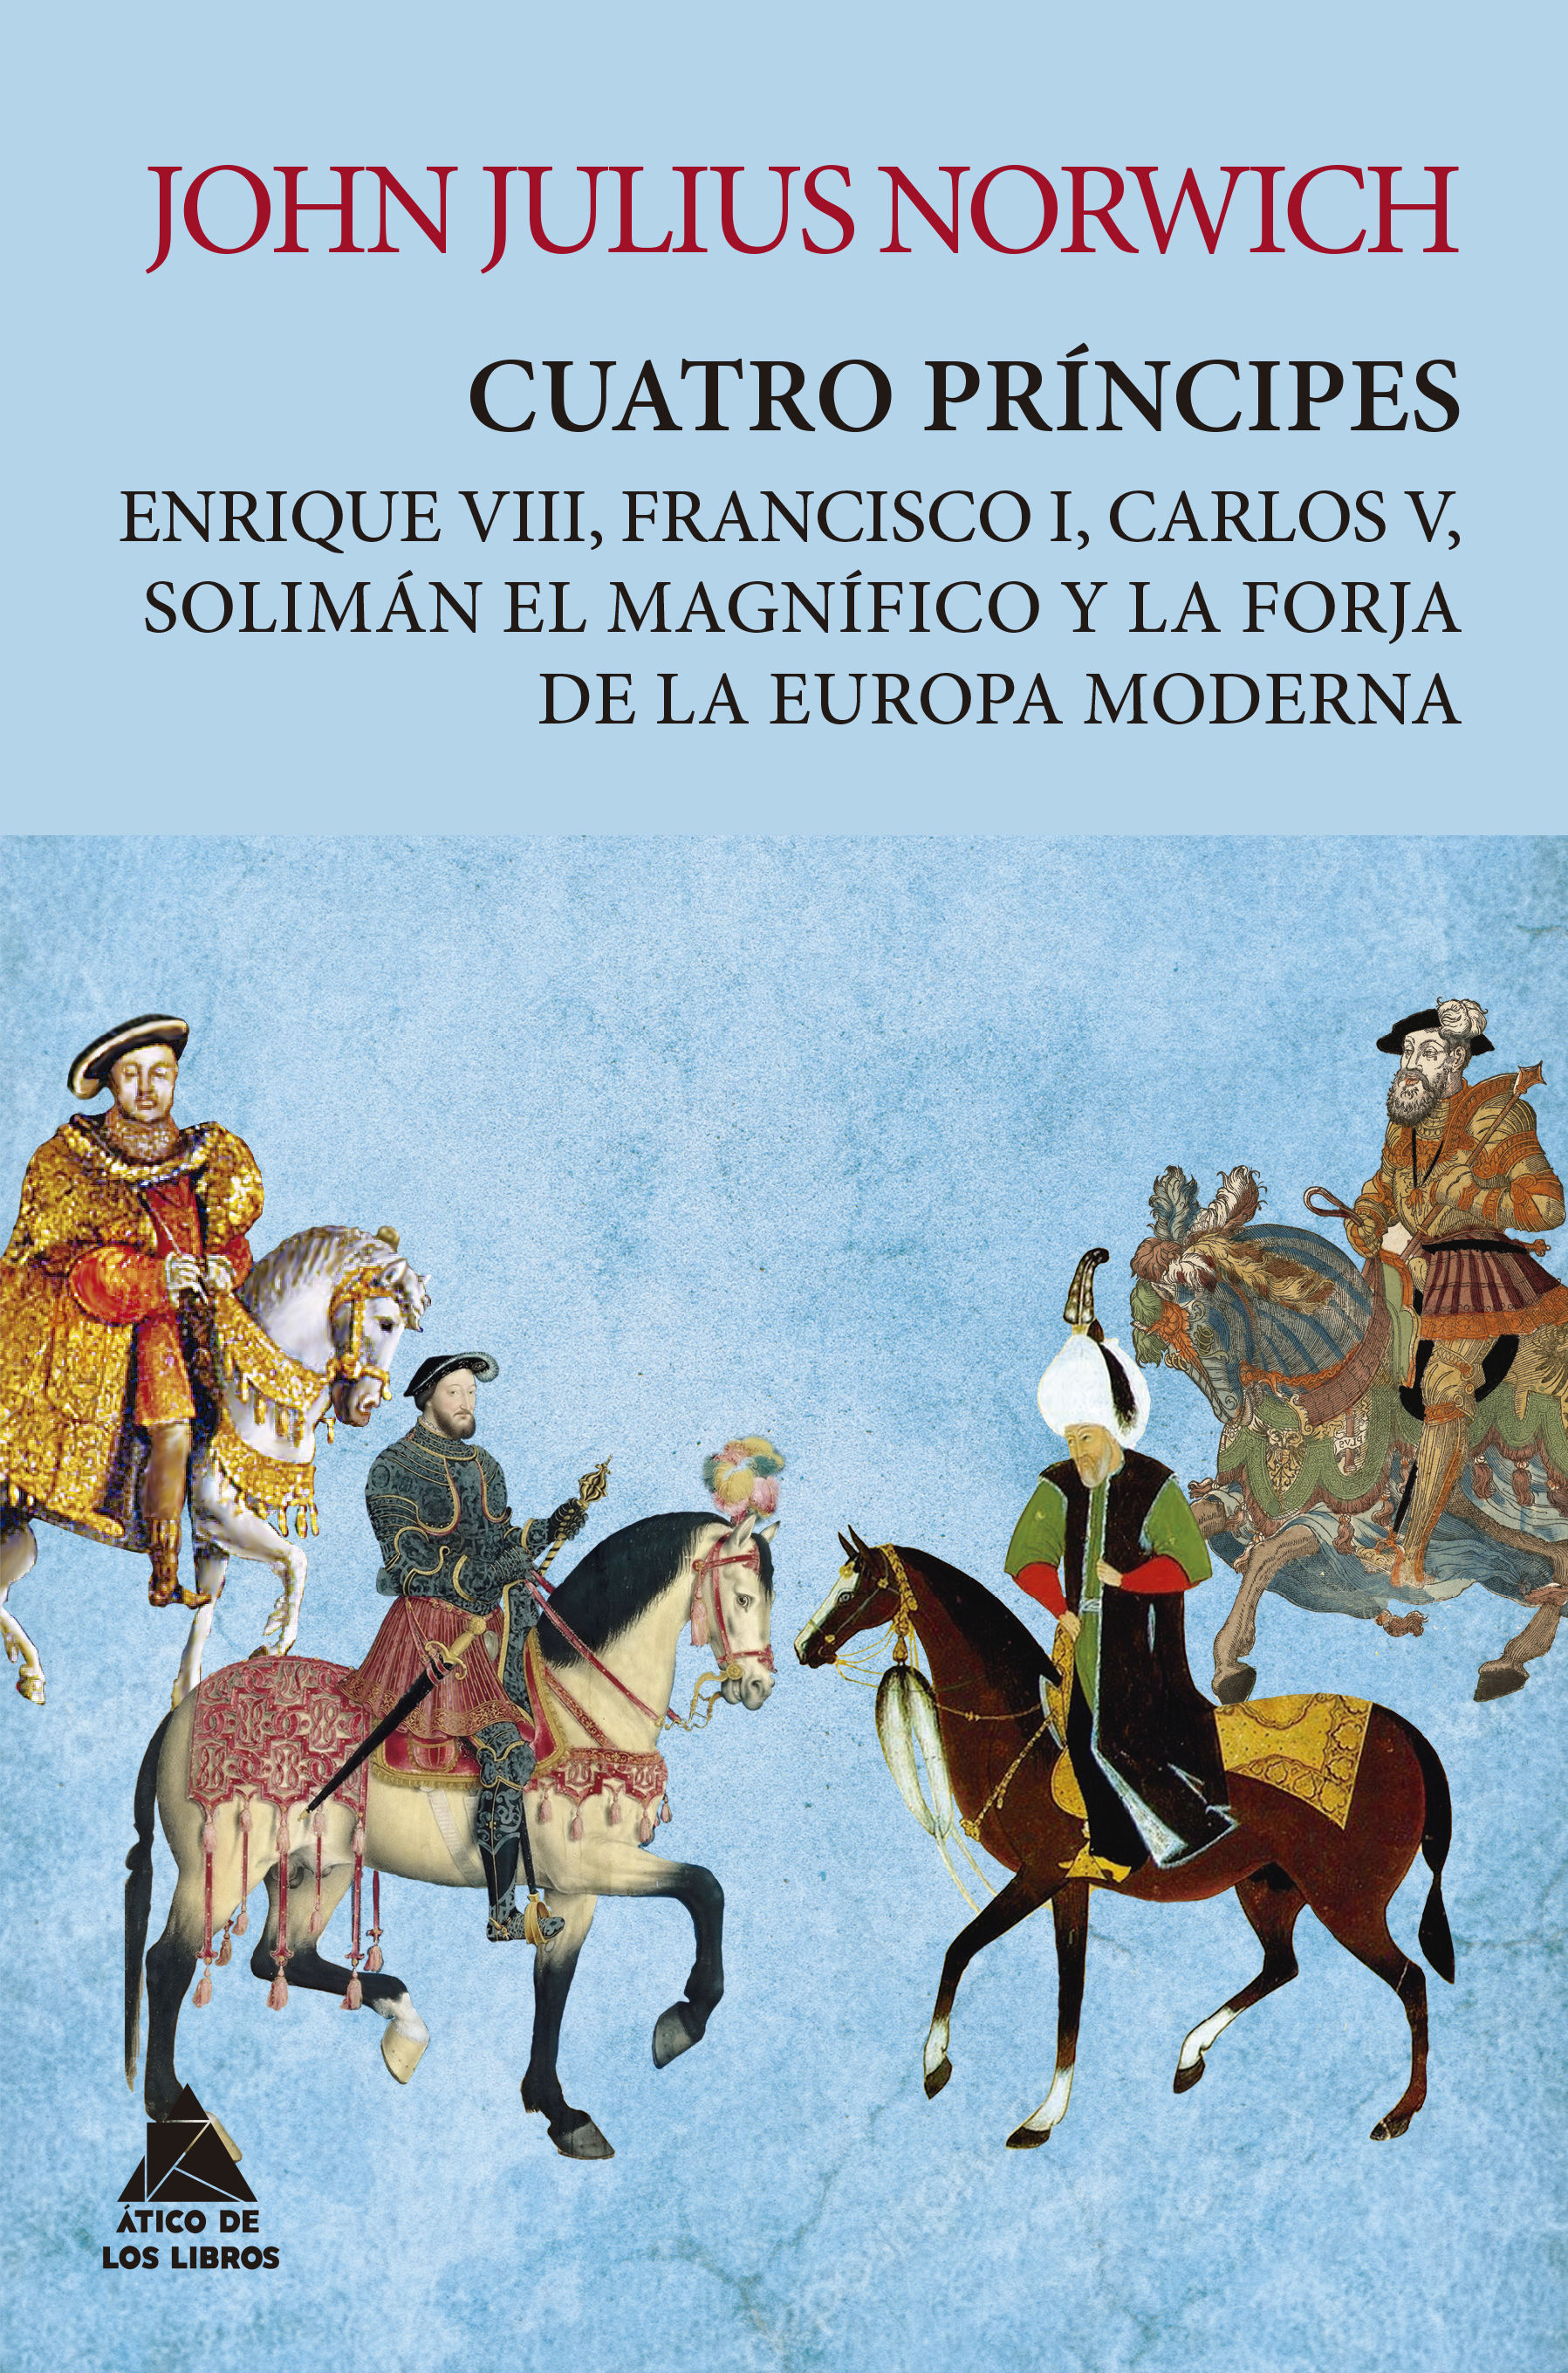 CUATRO PRÍNCIPES. ENRIQUE VIII, FRANCISCO I, CARLOS V, SOLIMÁN EL MAGNÍFICO Y LA FORJA DE LA EUROP